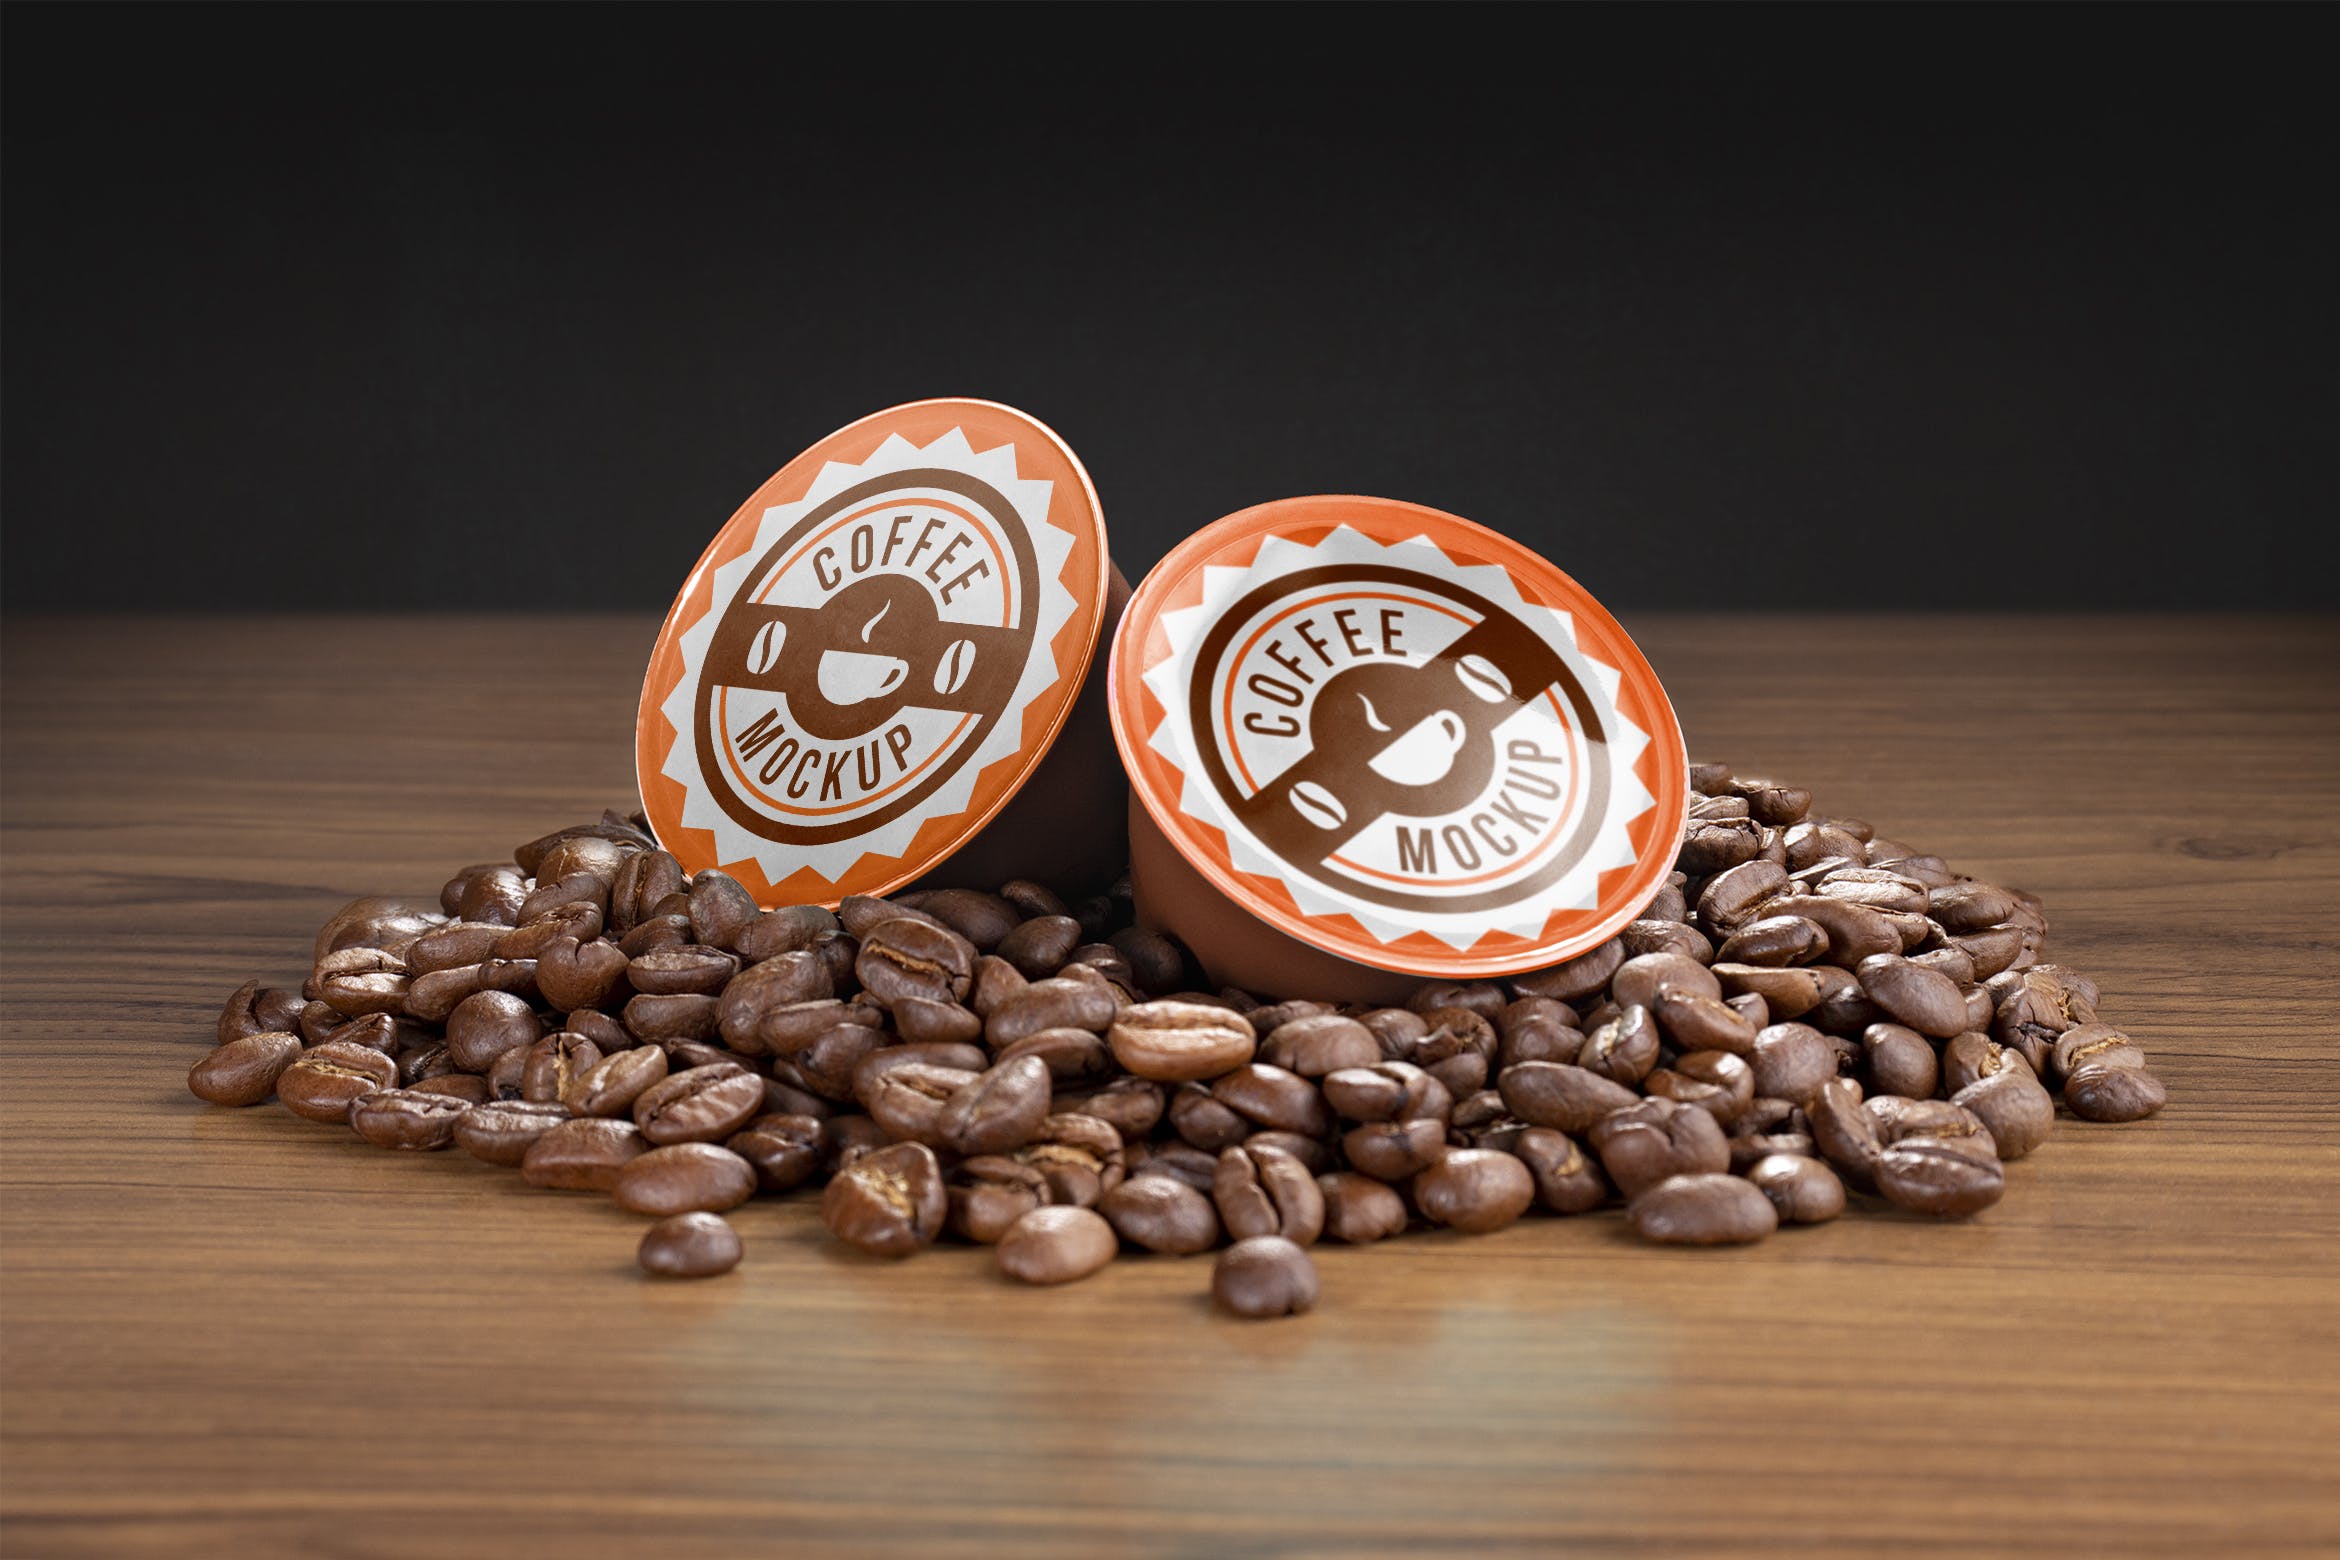 咖啡胶囊外包装设计素材库精选模板 Coffee capsule mockup插图